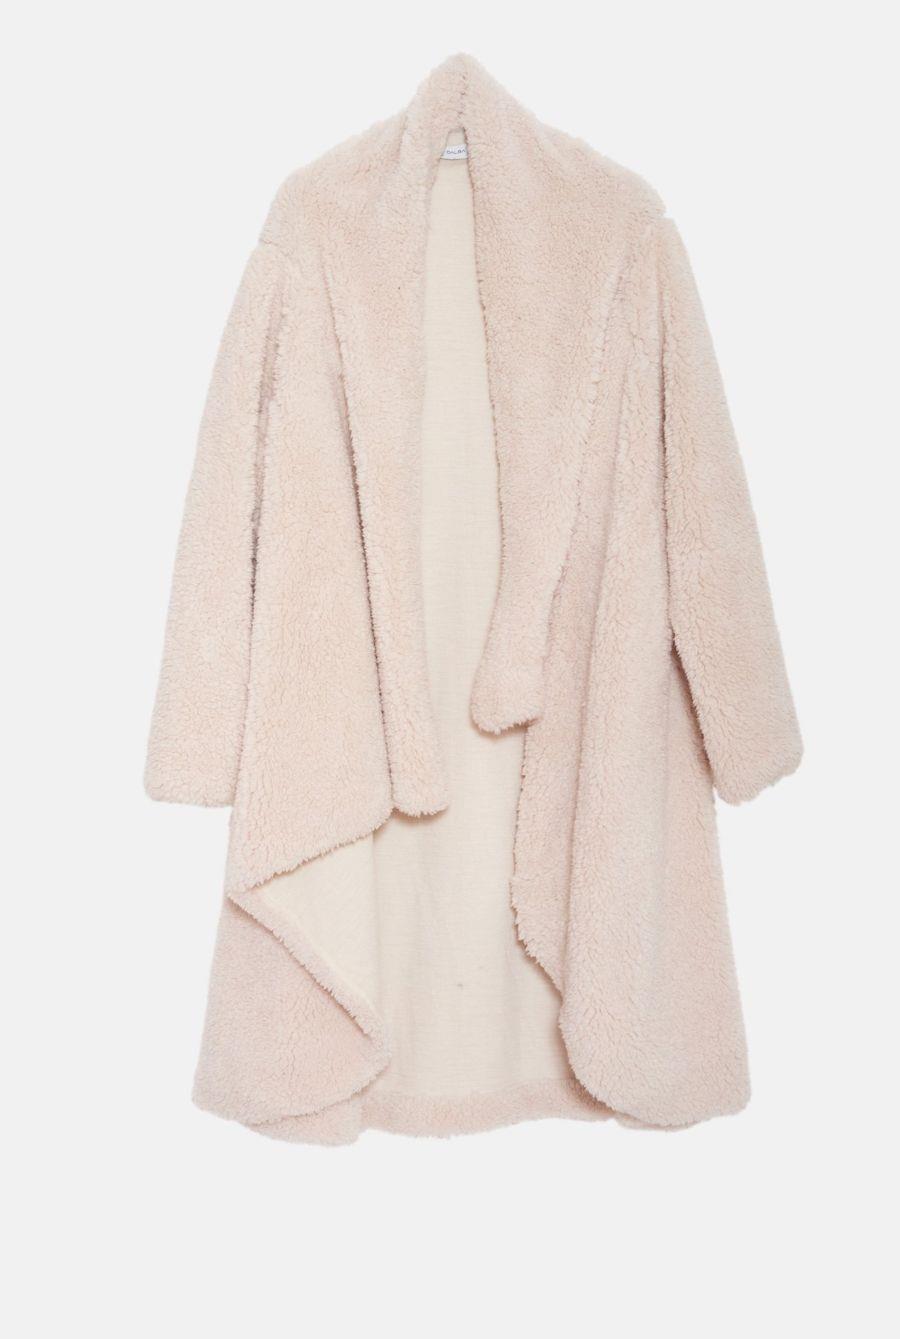 Pilar Dalbat Crema de chaqueta japonesa de cordero 2020 €695,00 (1)